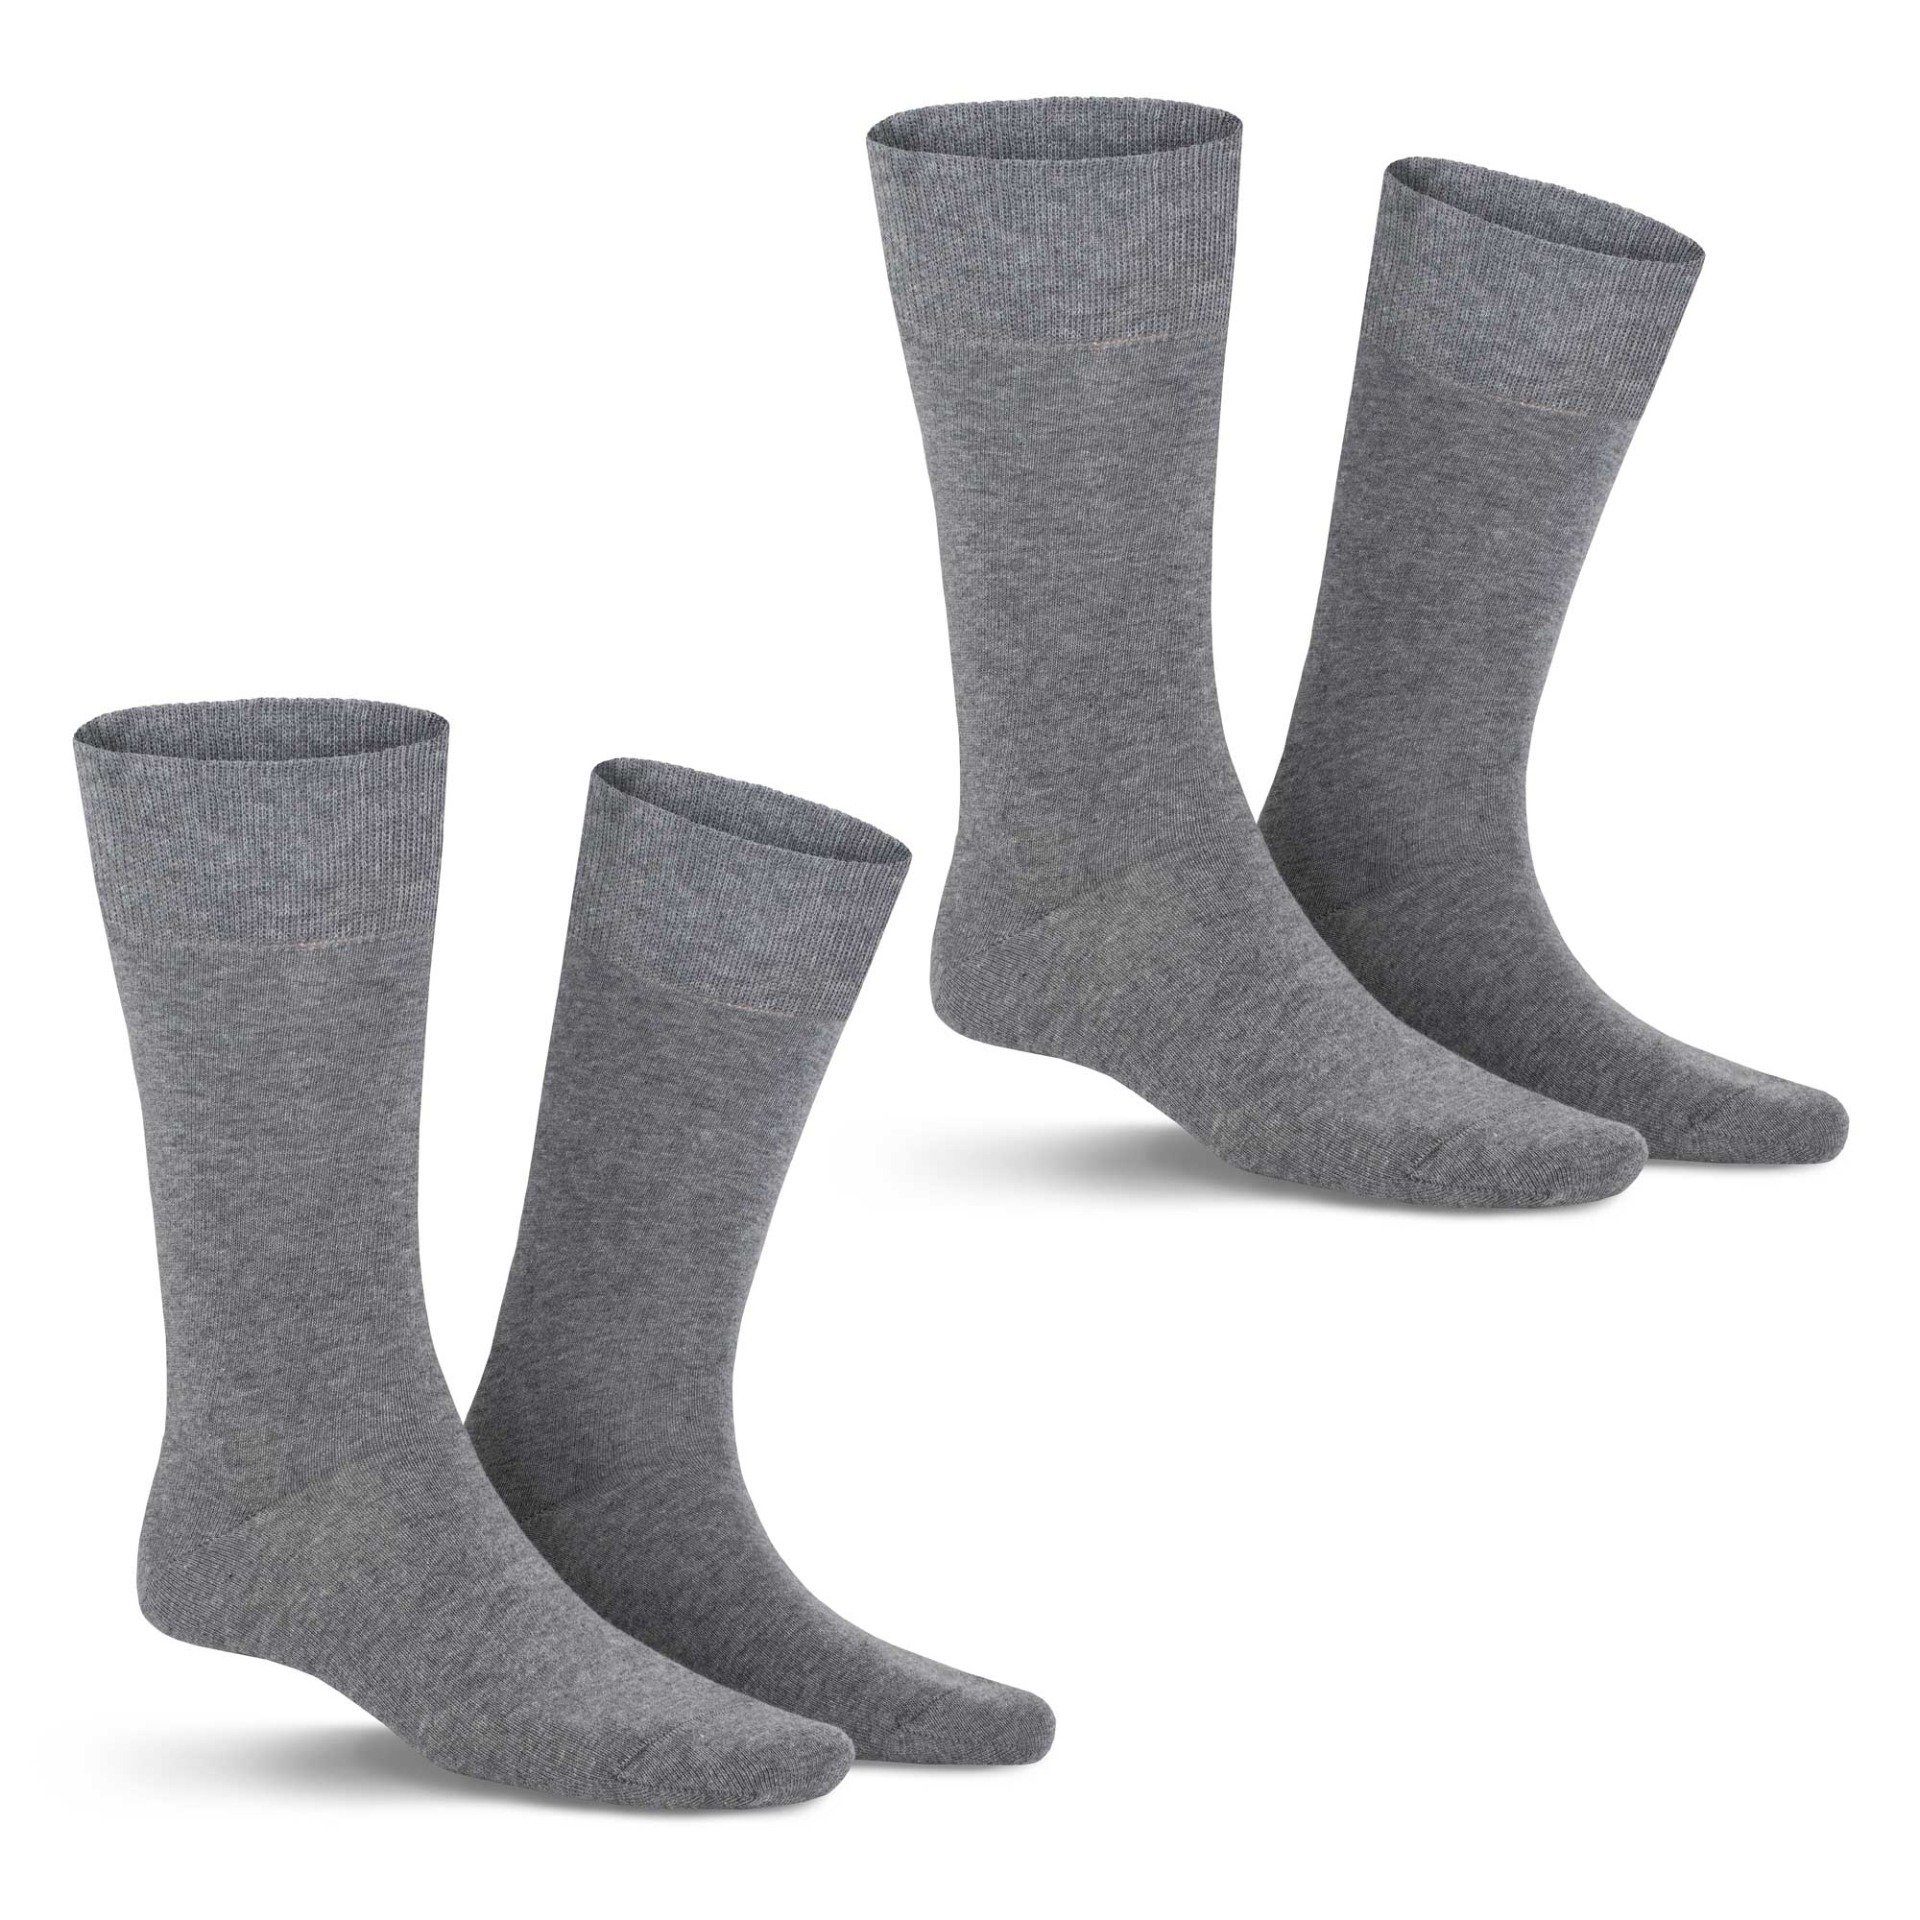 KUNERT Basicsocken COMFORT COTTON 2-PACK (2-Paar) Herren Socken im Doppelpack mit hohem Baumwoll-Anteil Beige-mel. 8320